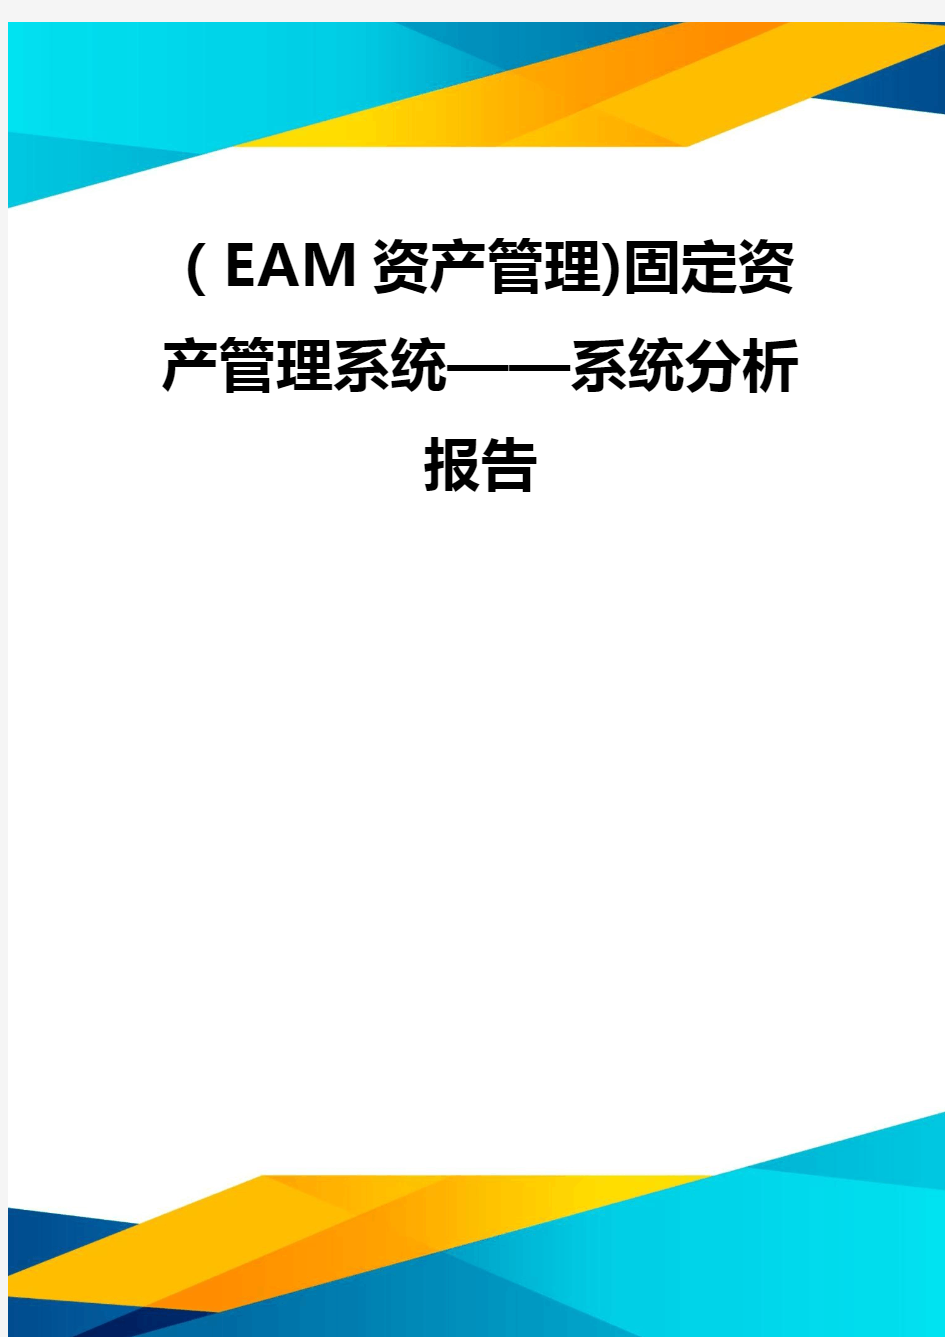 (EAM资产管理)固定资产管理系统——系统分析报告